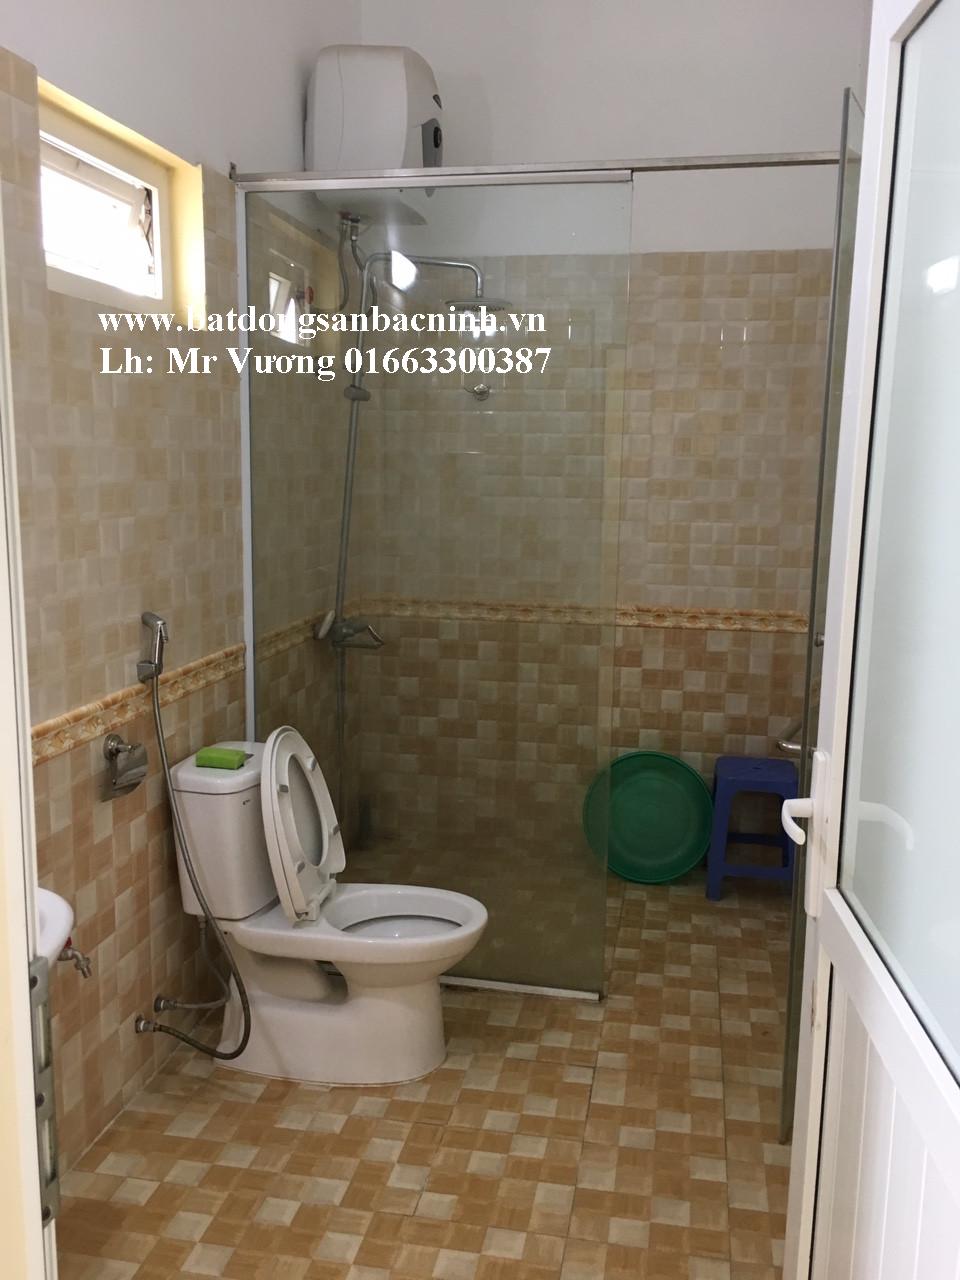 Cho thuê nhà 5 tầng 6 phòng ngủ tại phường Kinh Bắc, TP. Bắc Ninh 7020648